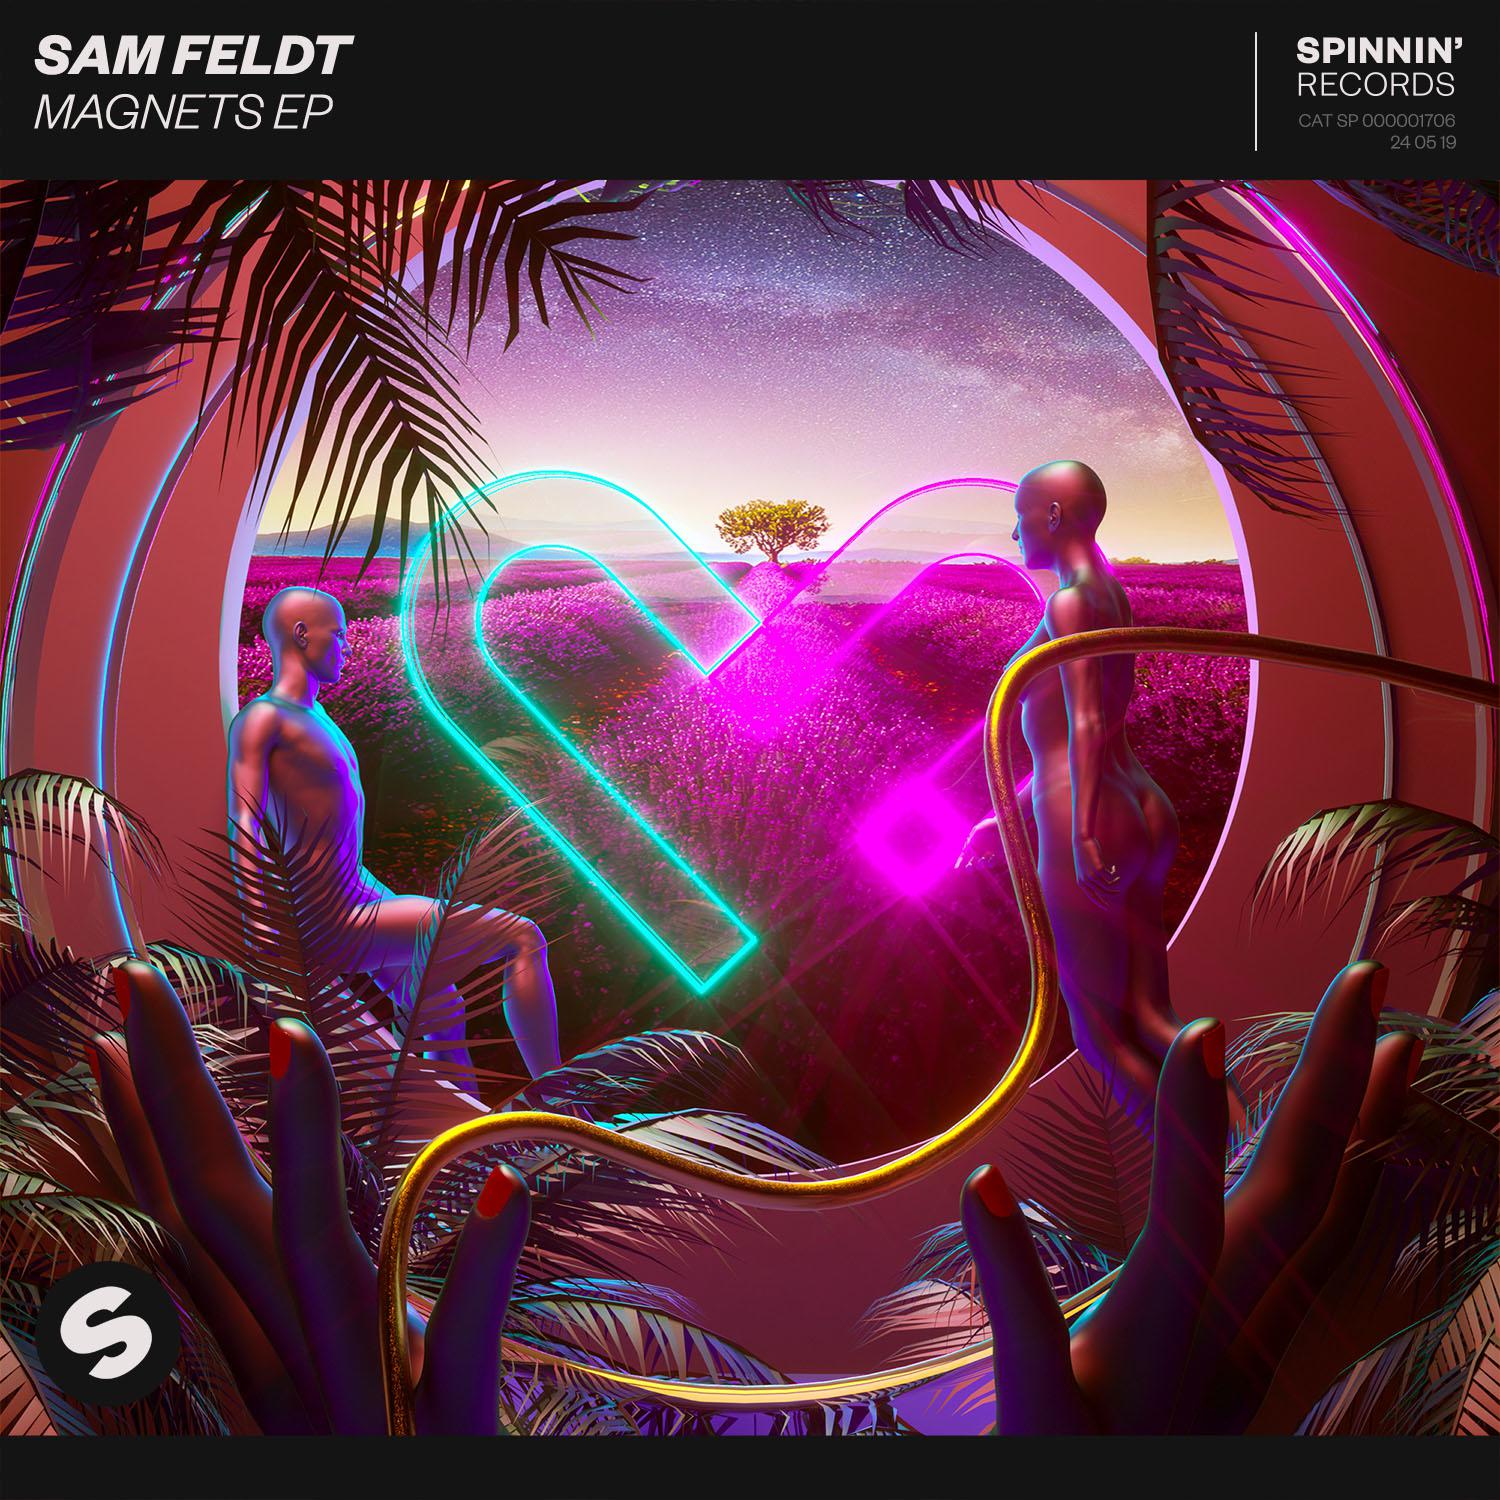 Post Malone歌词 歌手Sam Feldt / RANI-专辑Magnets EP-单曲《Post Malone》LRC歌词下载